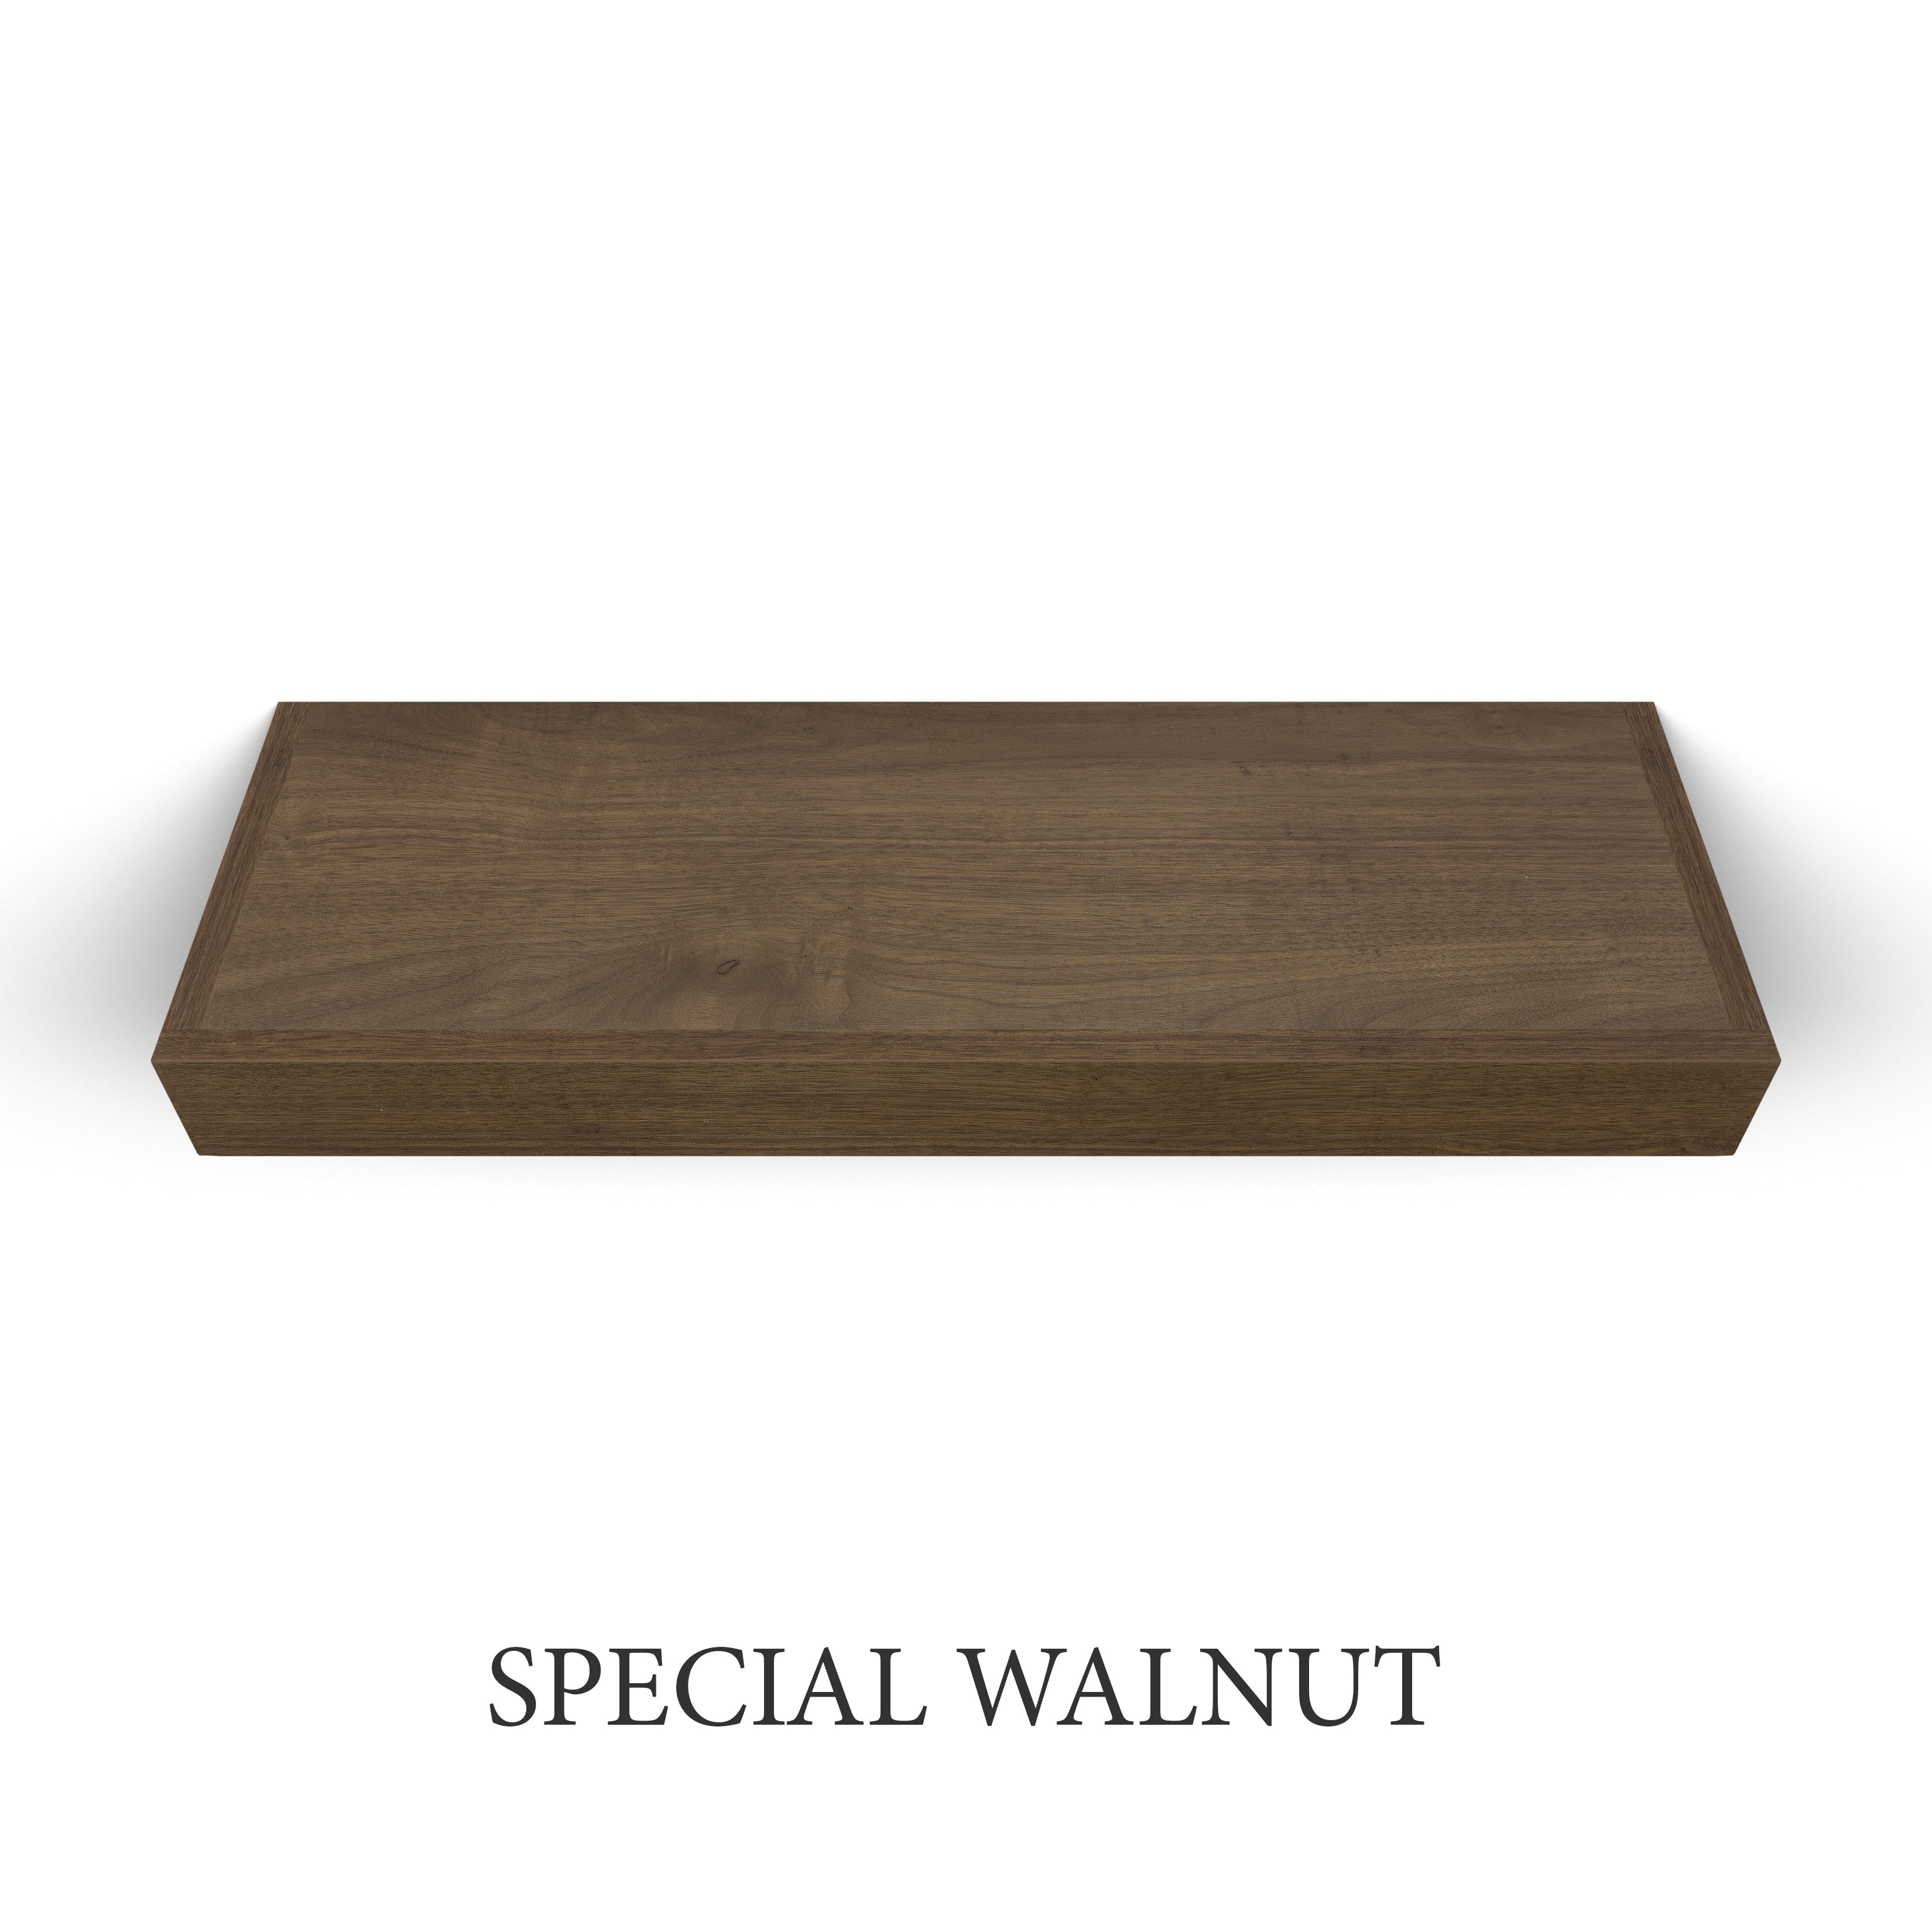 Walnut 3 Inch Thick Floating Shelf